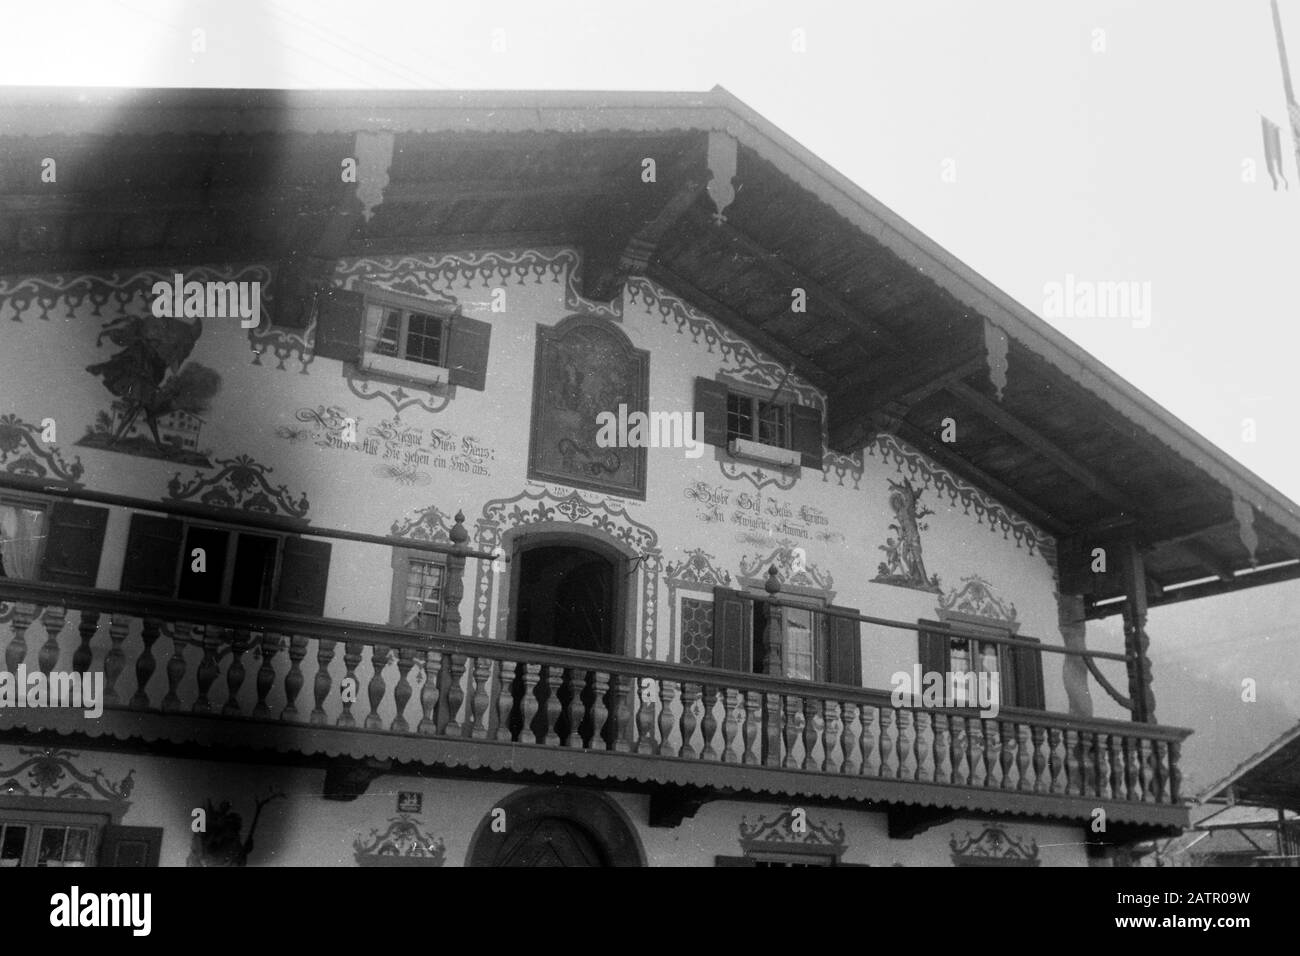 Traditionelles bayerisches Wohnhaus mit Wandbemalung und Holzbalustrade, 1957. Traditionelle bayerische Behausung mit Wandbildern und Holzbalustrade, 1957. Stockfoto